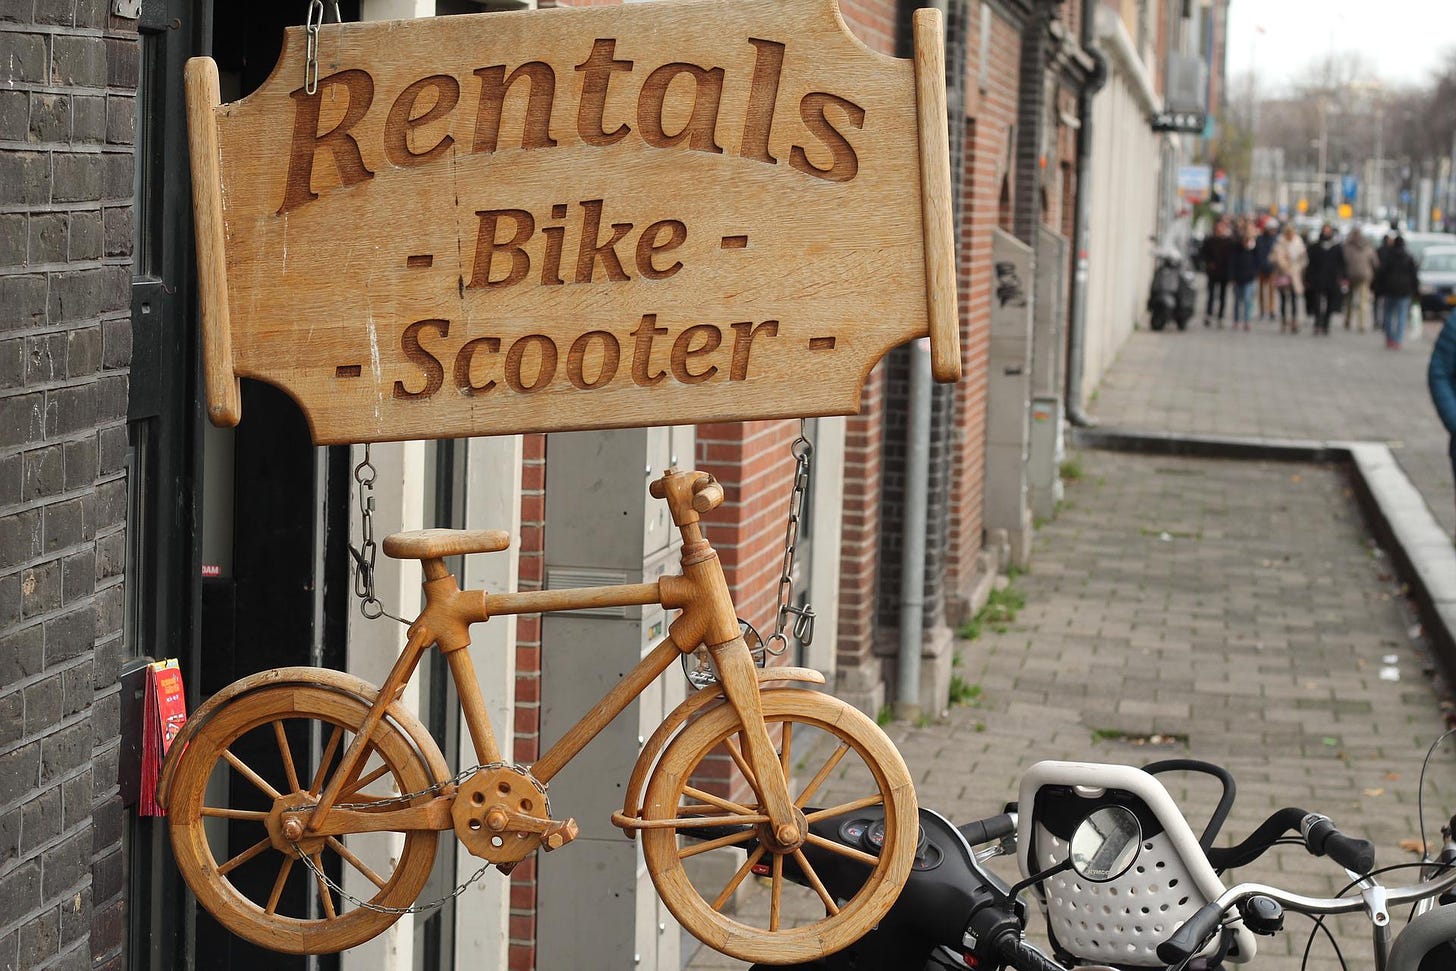 Bike-Scooter-Rental Sign